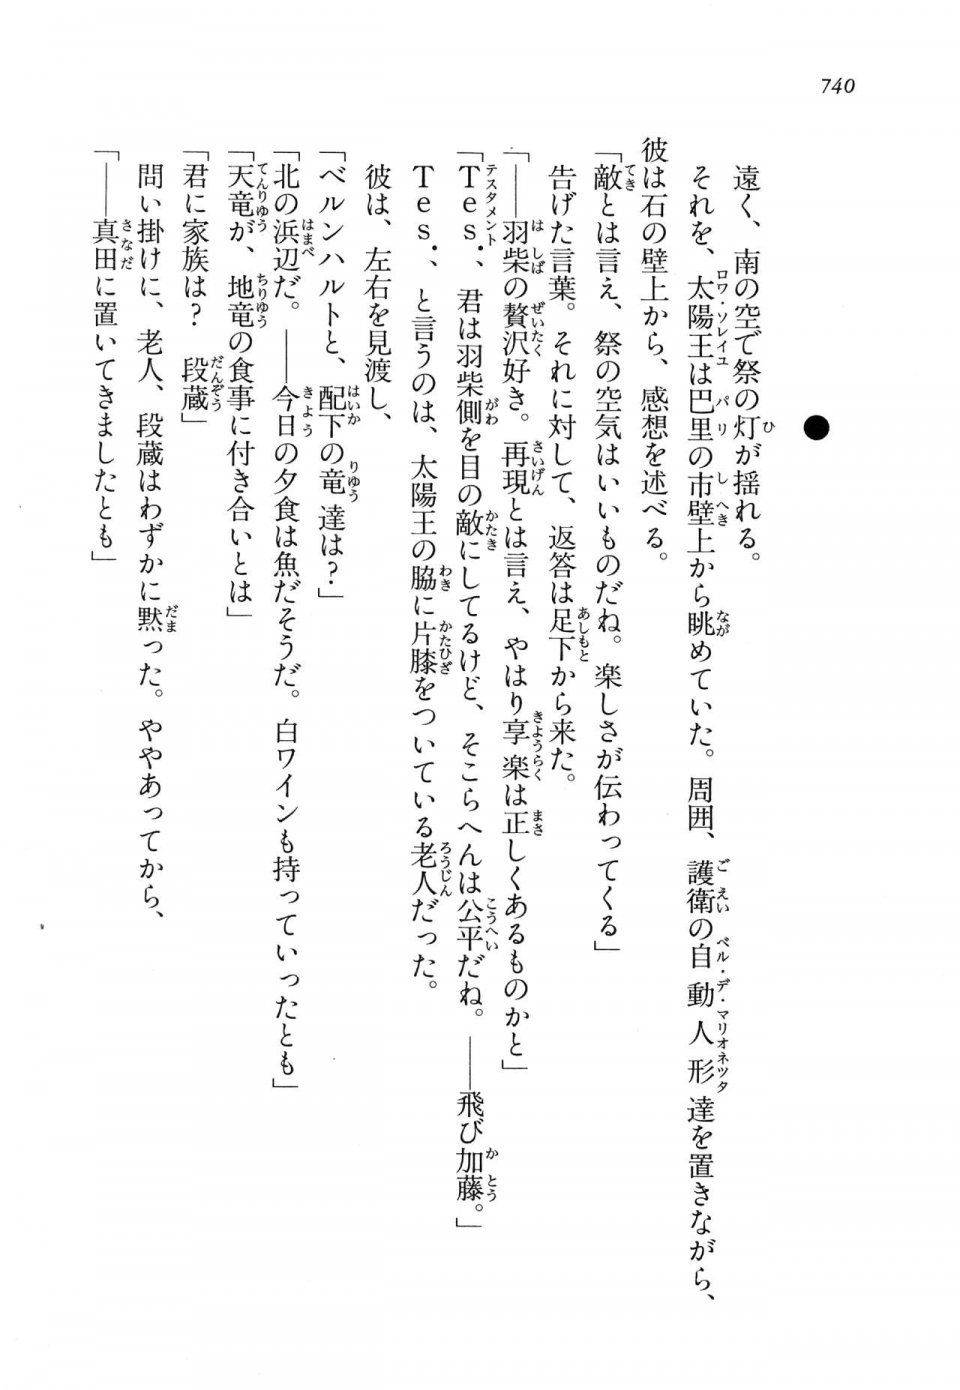 Kyoukai Senjou no Horizon LN Vol 14(6B) - Photo #740